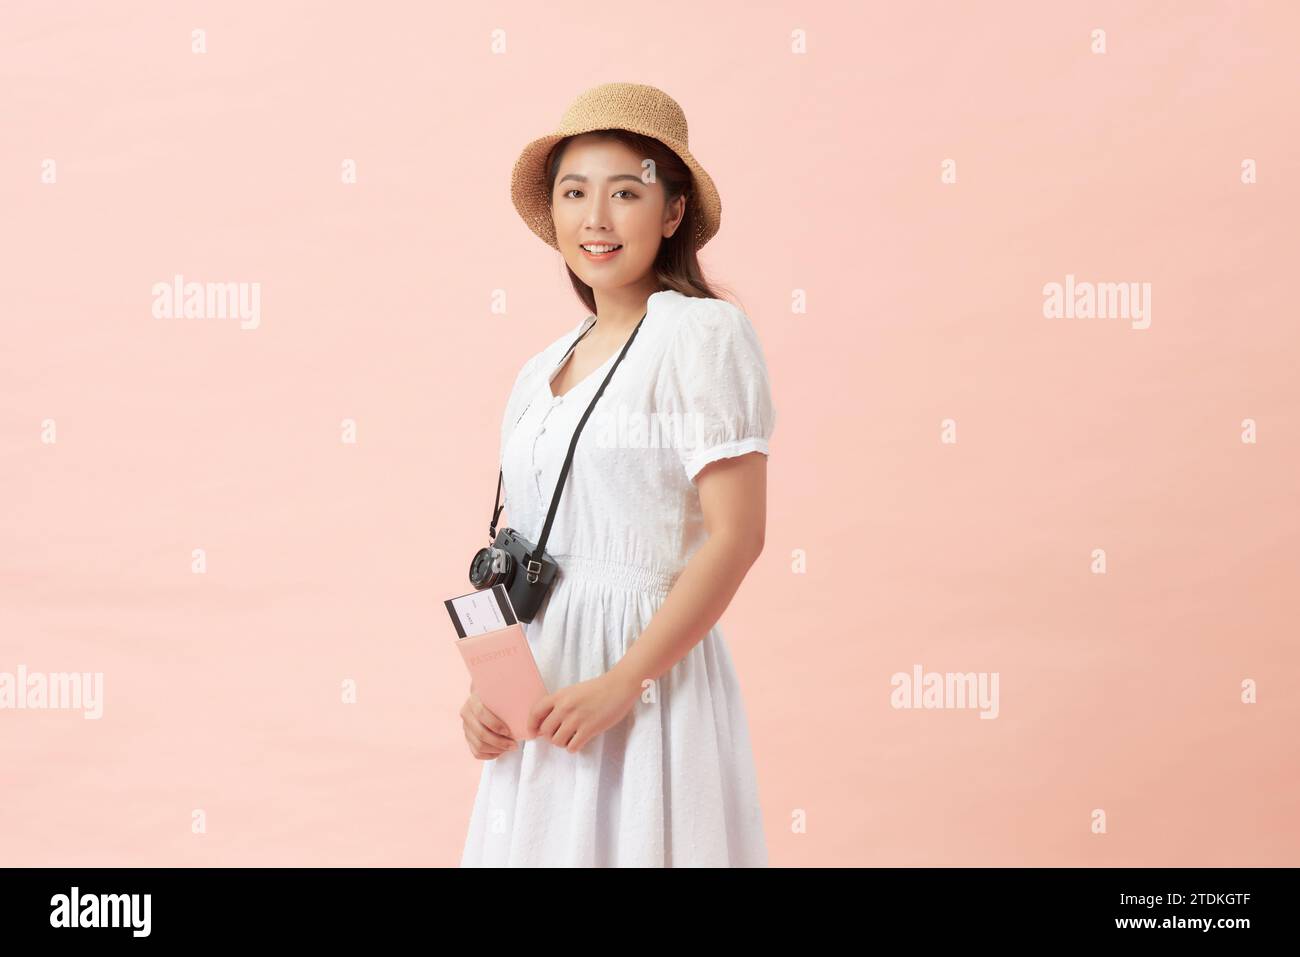 Una donna turistica felice che indossa un cappello con i biglietti per la fotocamera sembra isolata su sfondo rosa Foto Stock